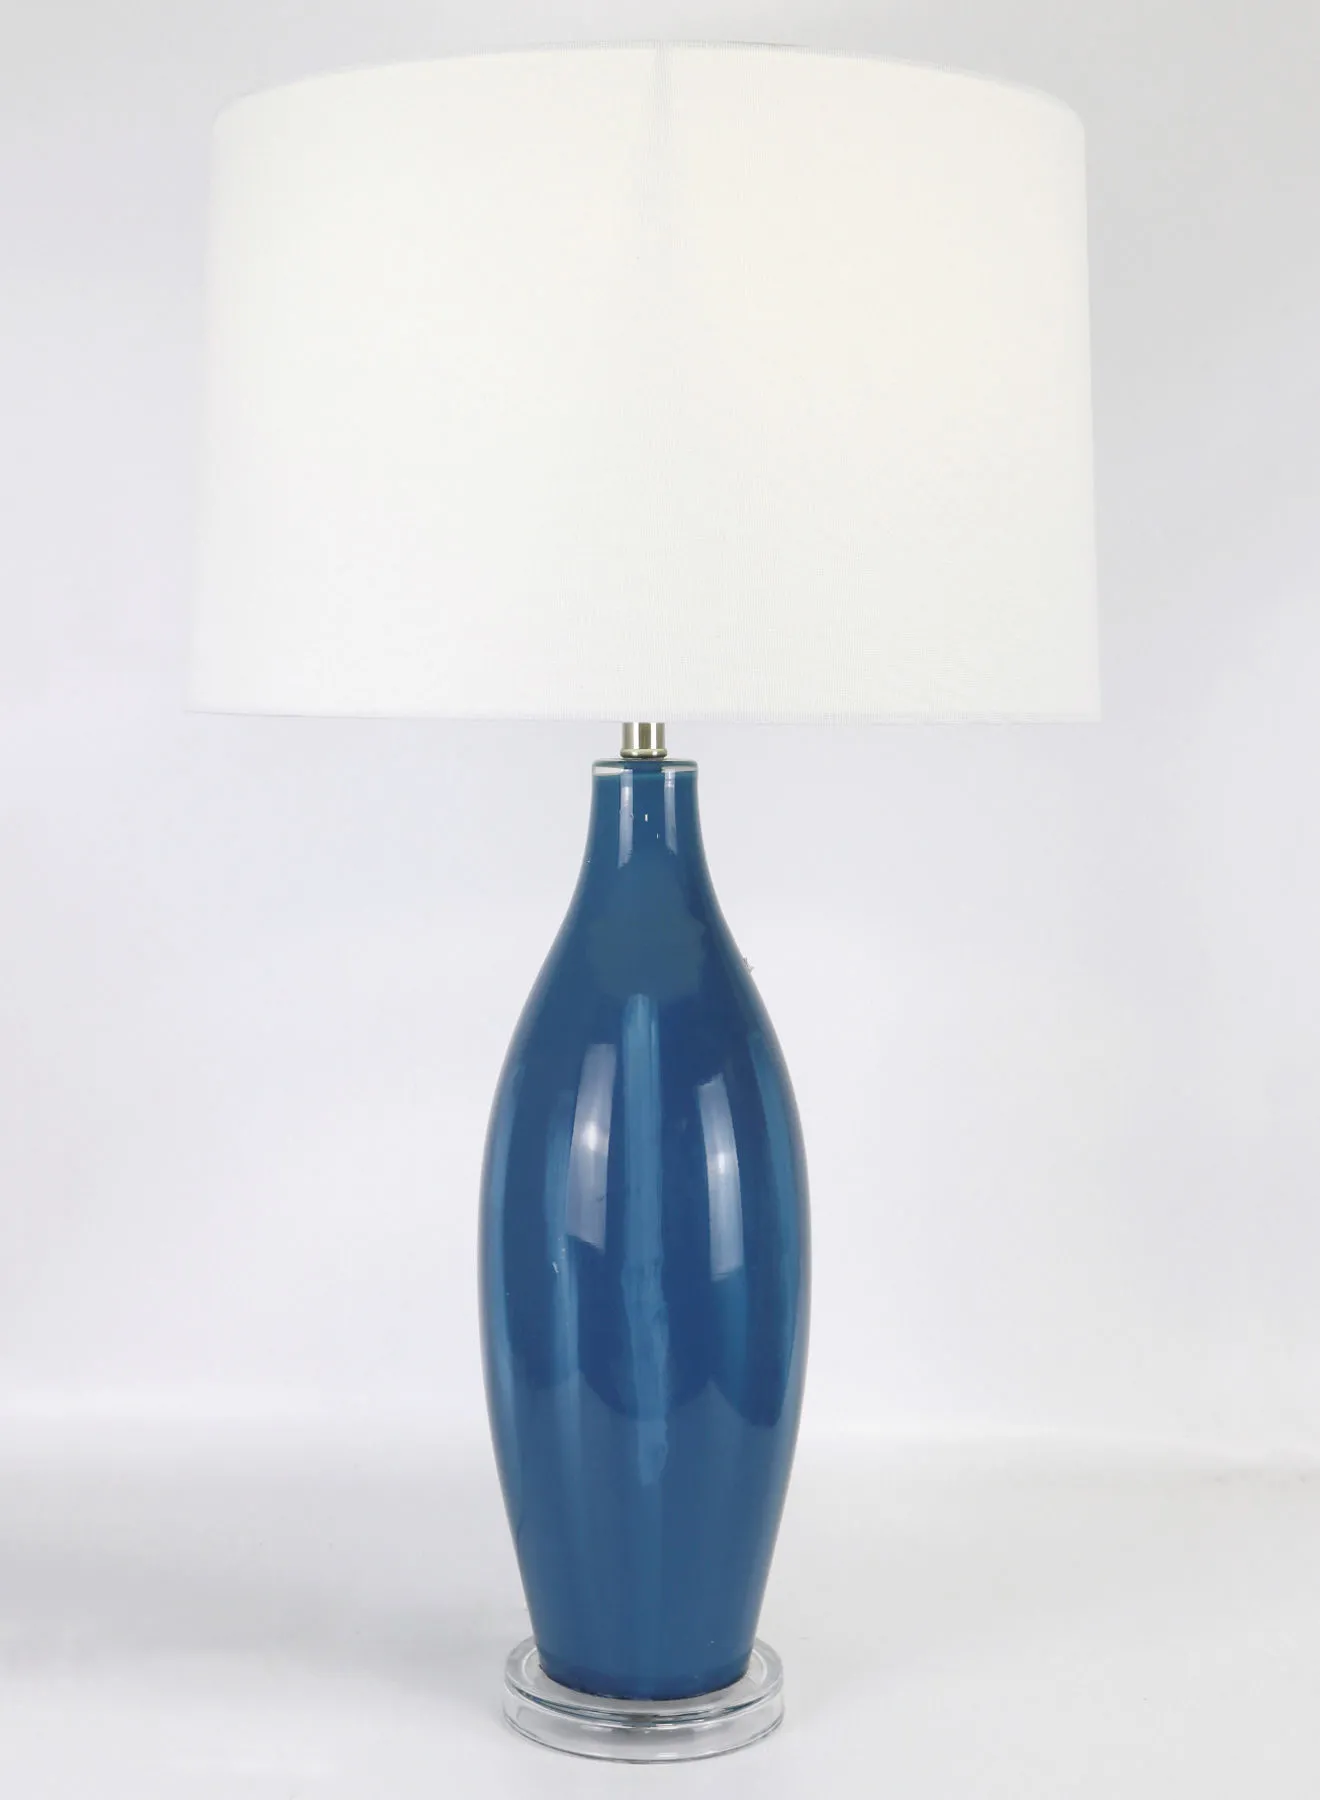 مصباح طاولة زجاجي بتصميم عصري من المد والجزر ، مادة فاخرة فريدة من نوعها ذات جودة عالية لمنزل أنيق مثالي RSN71041 أزرق 16 × 28.2